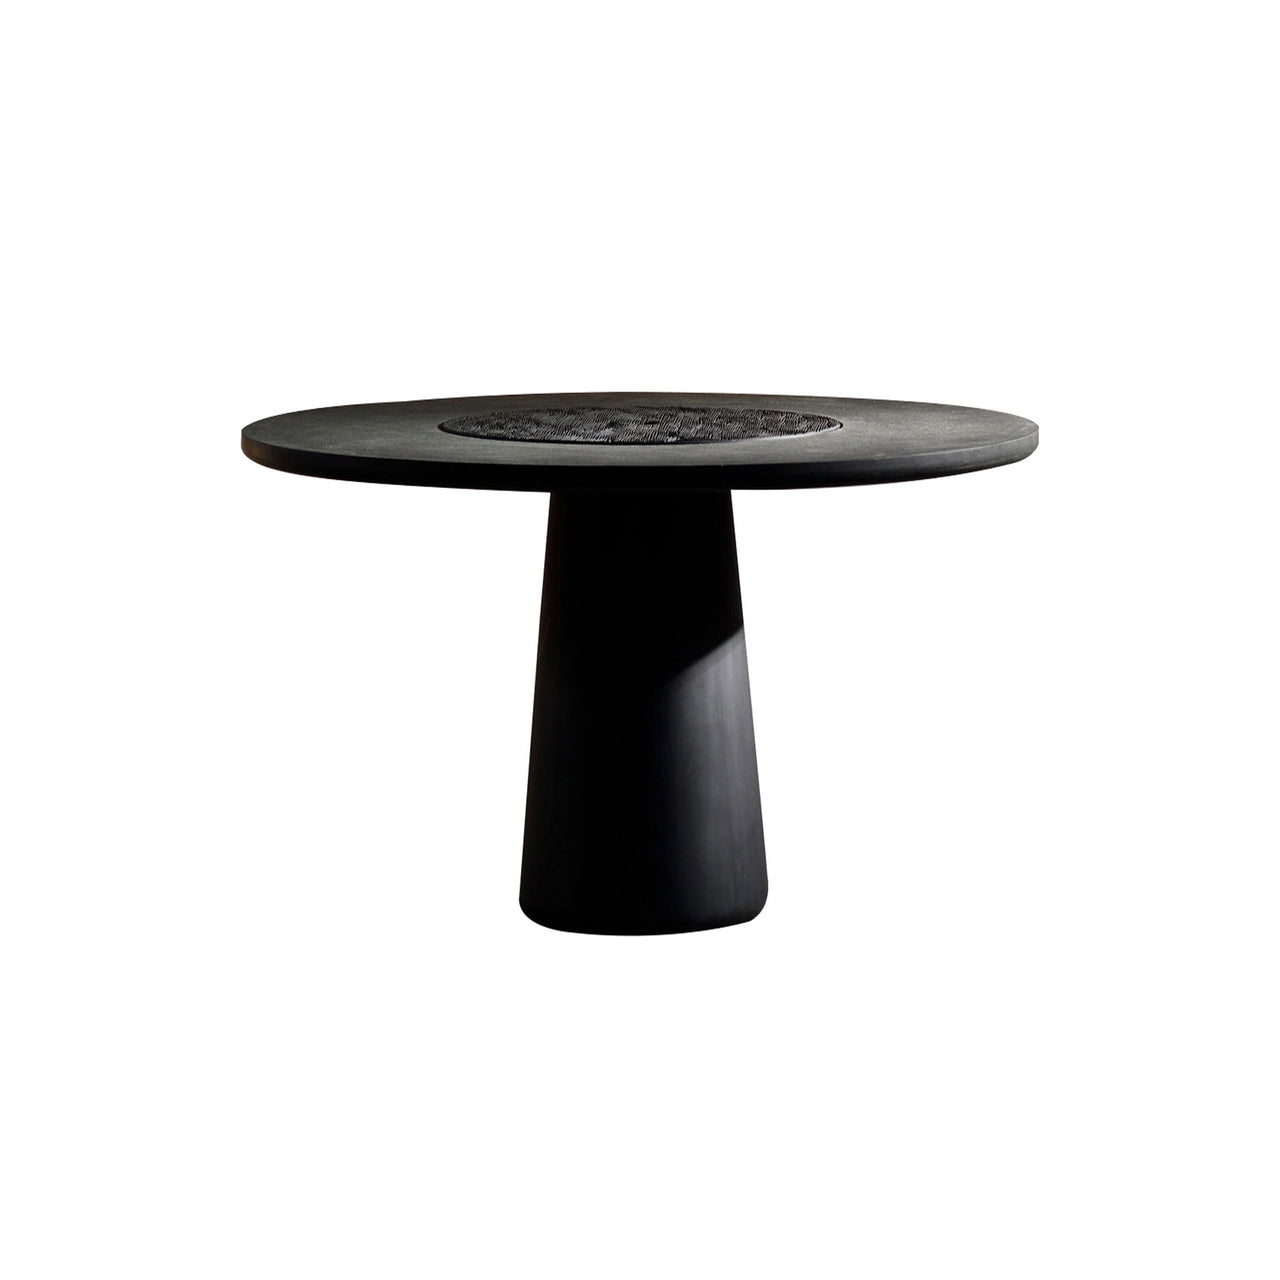 Koba Table: Small - 55.1